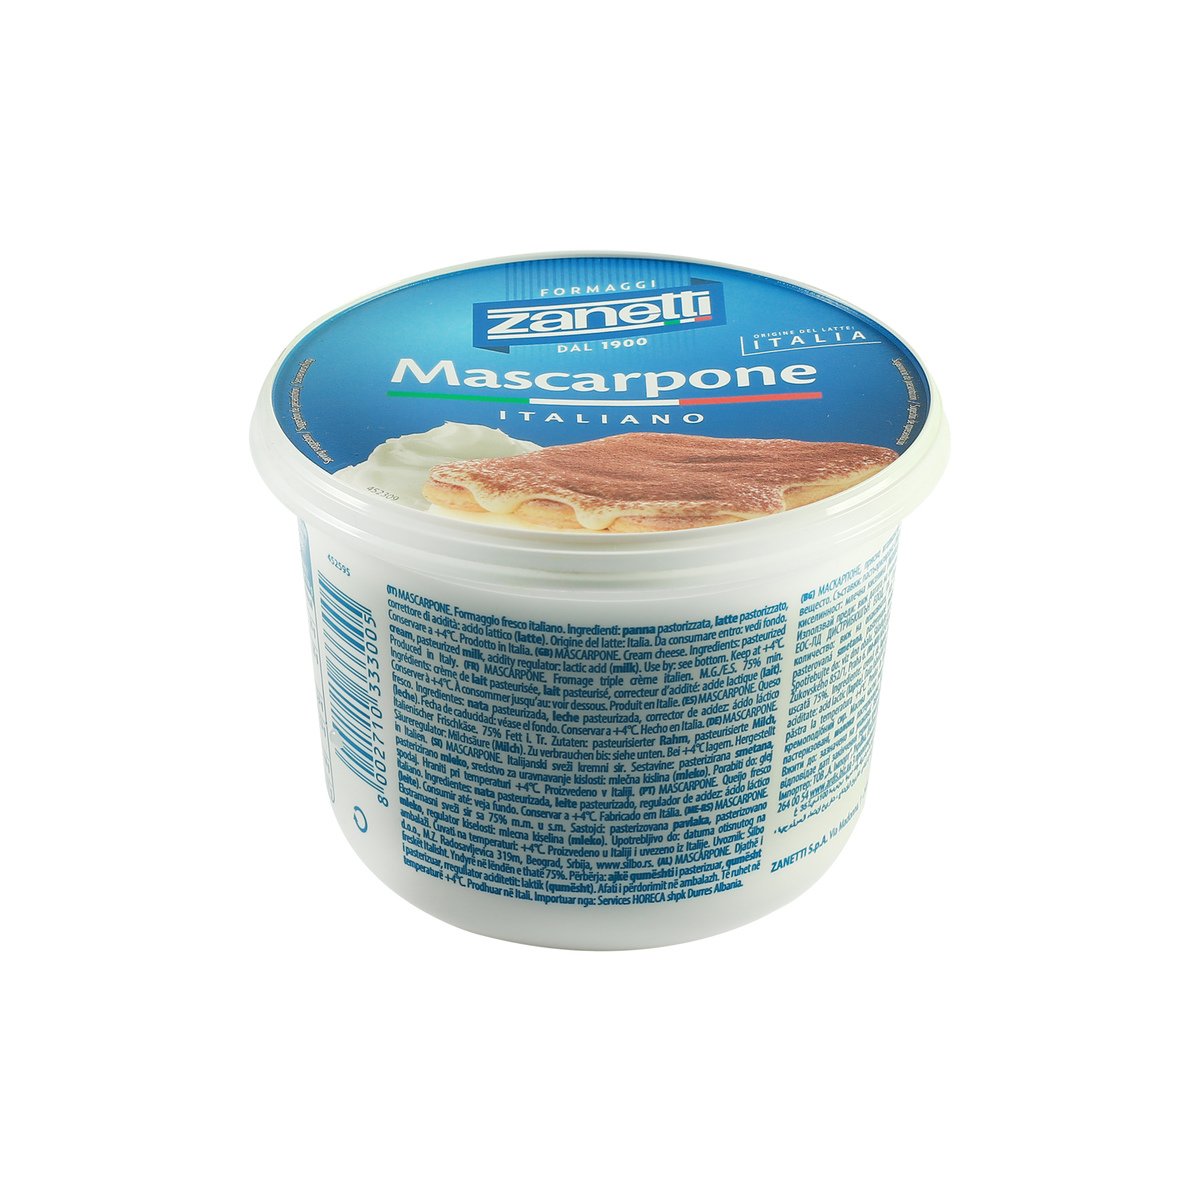 Zanetti Mascarpone Cheese 500g